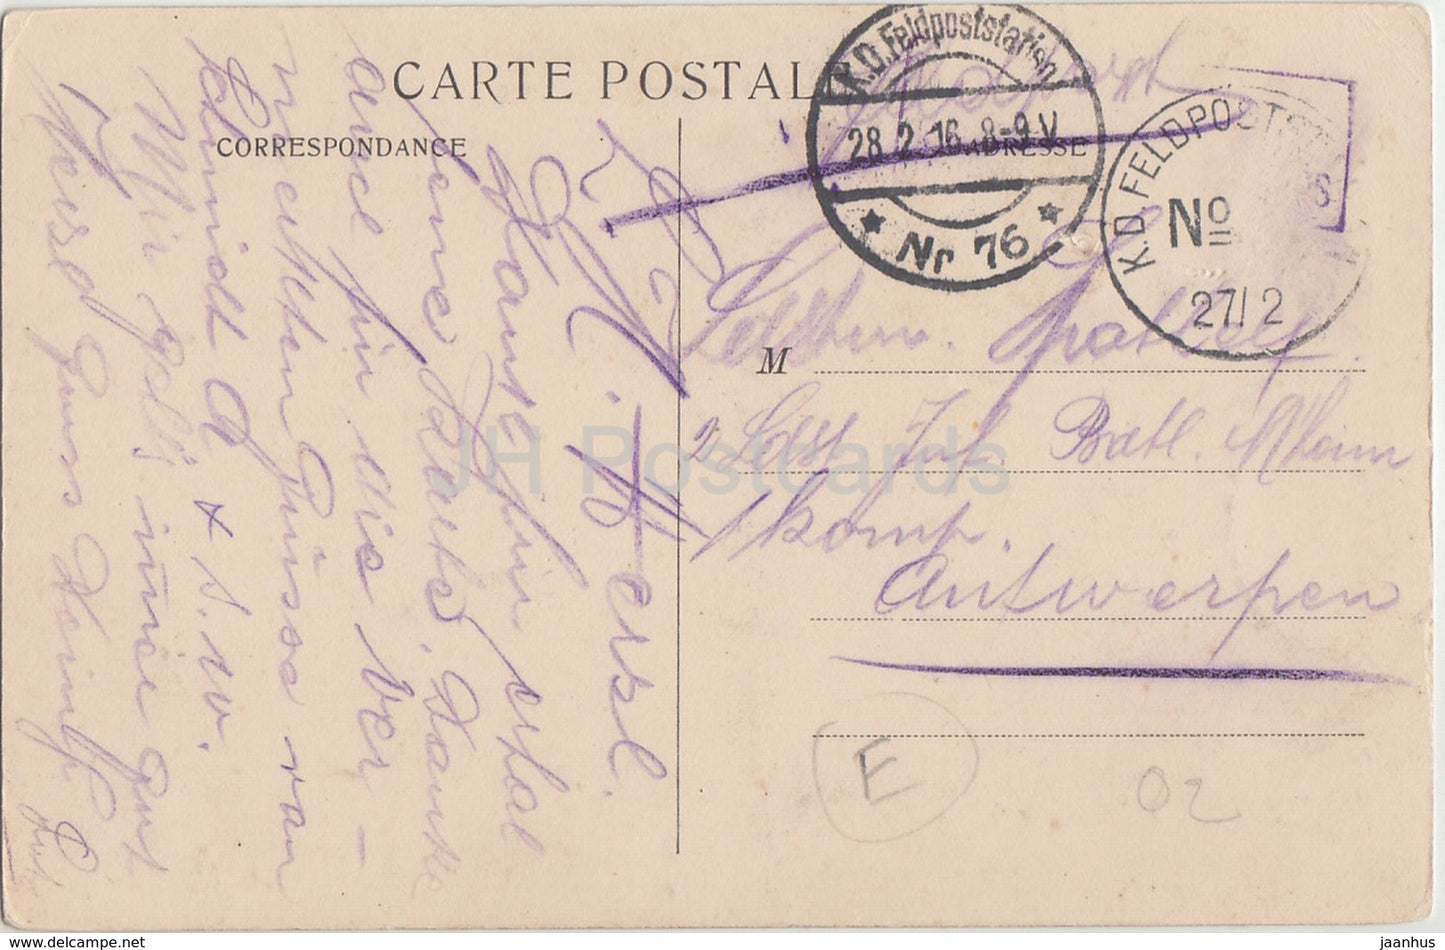 Laon - La Cathédrale - Vue du chevet prise du Palais de Justice - 1916 - Feldpost - carte postale ancienne - France - occasion